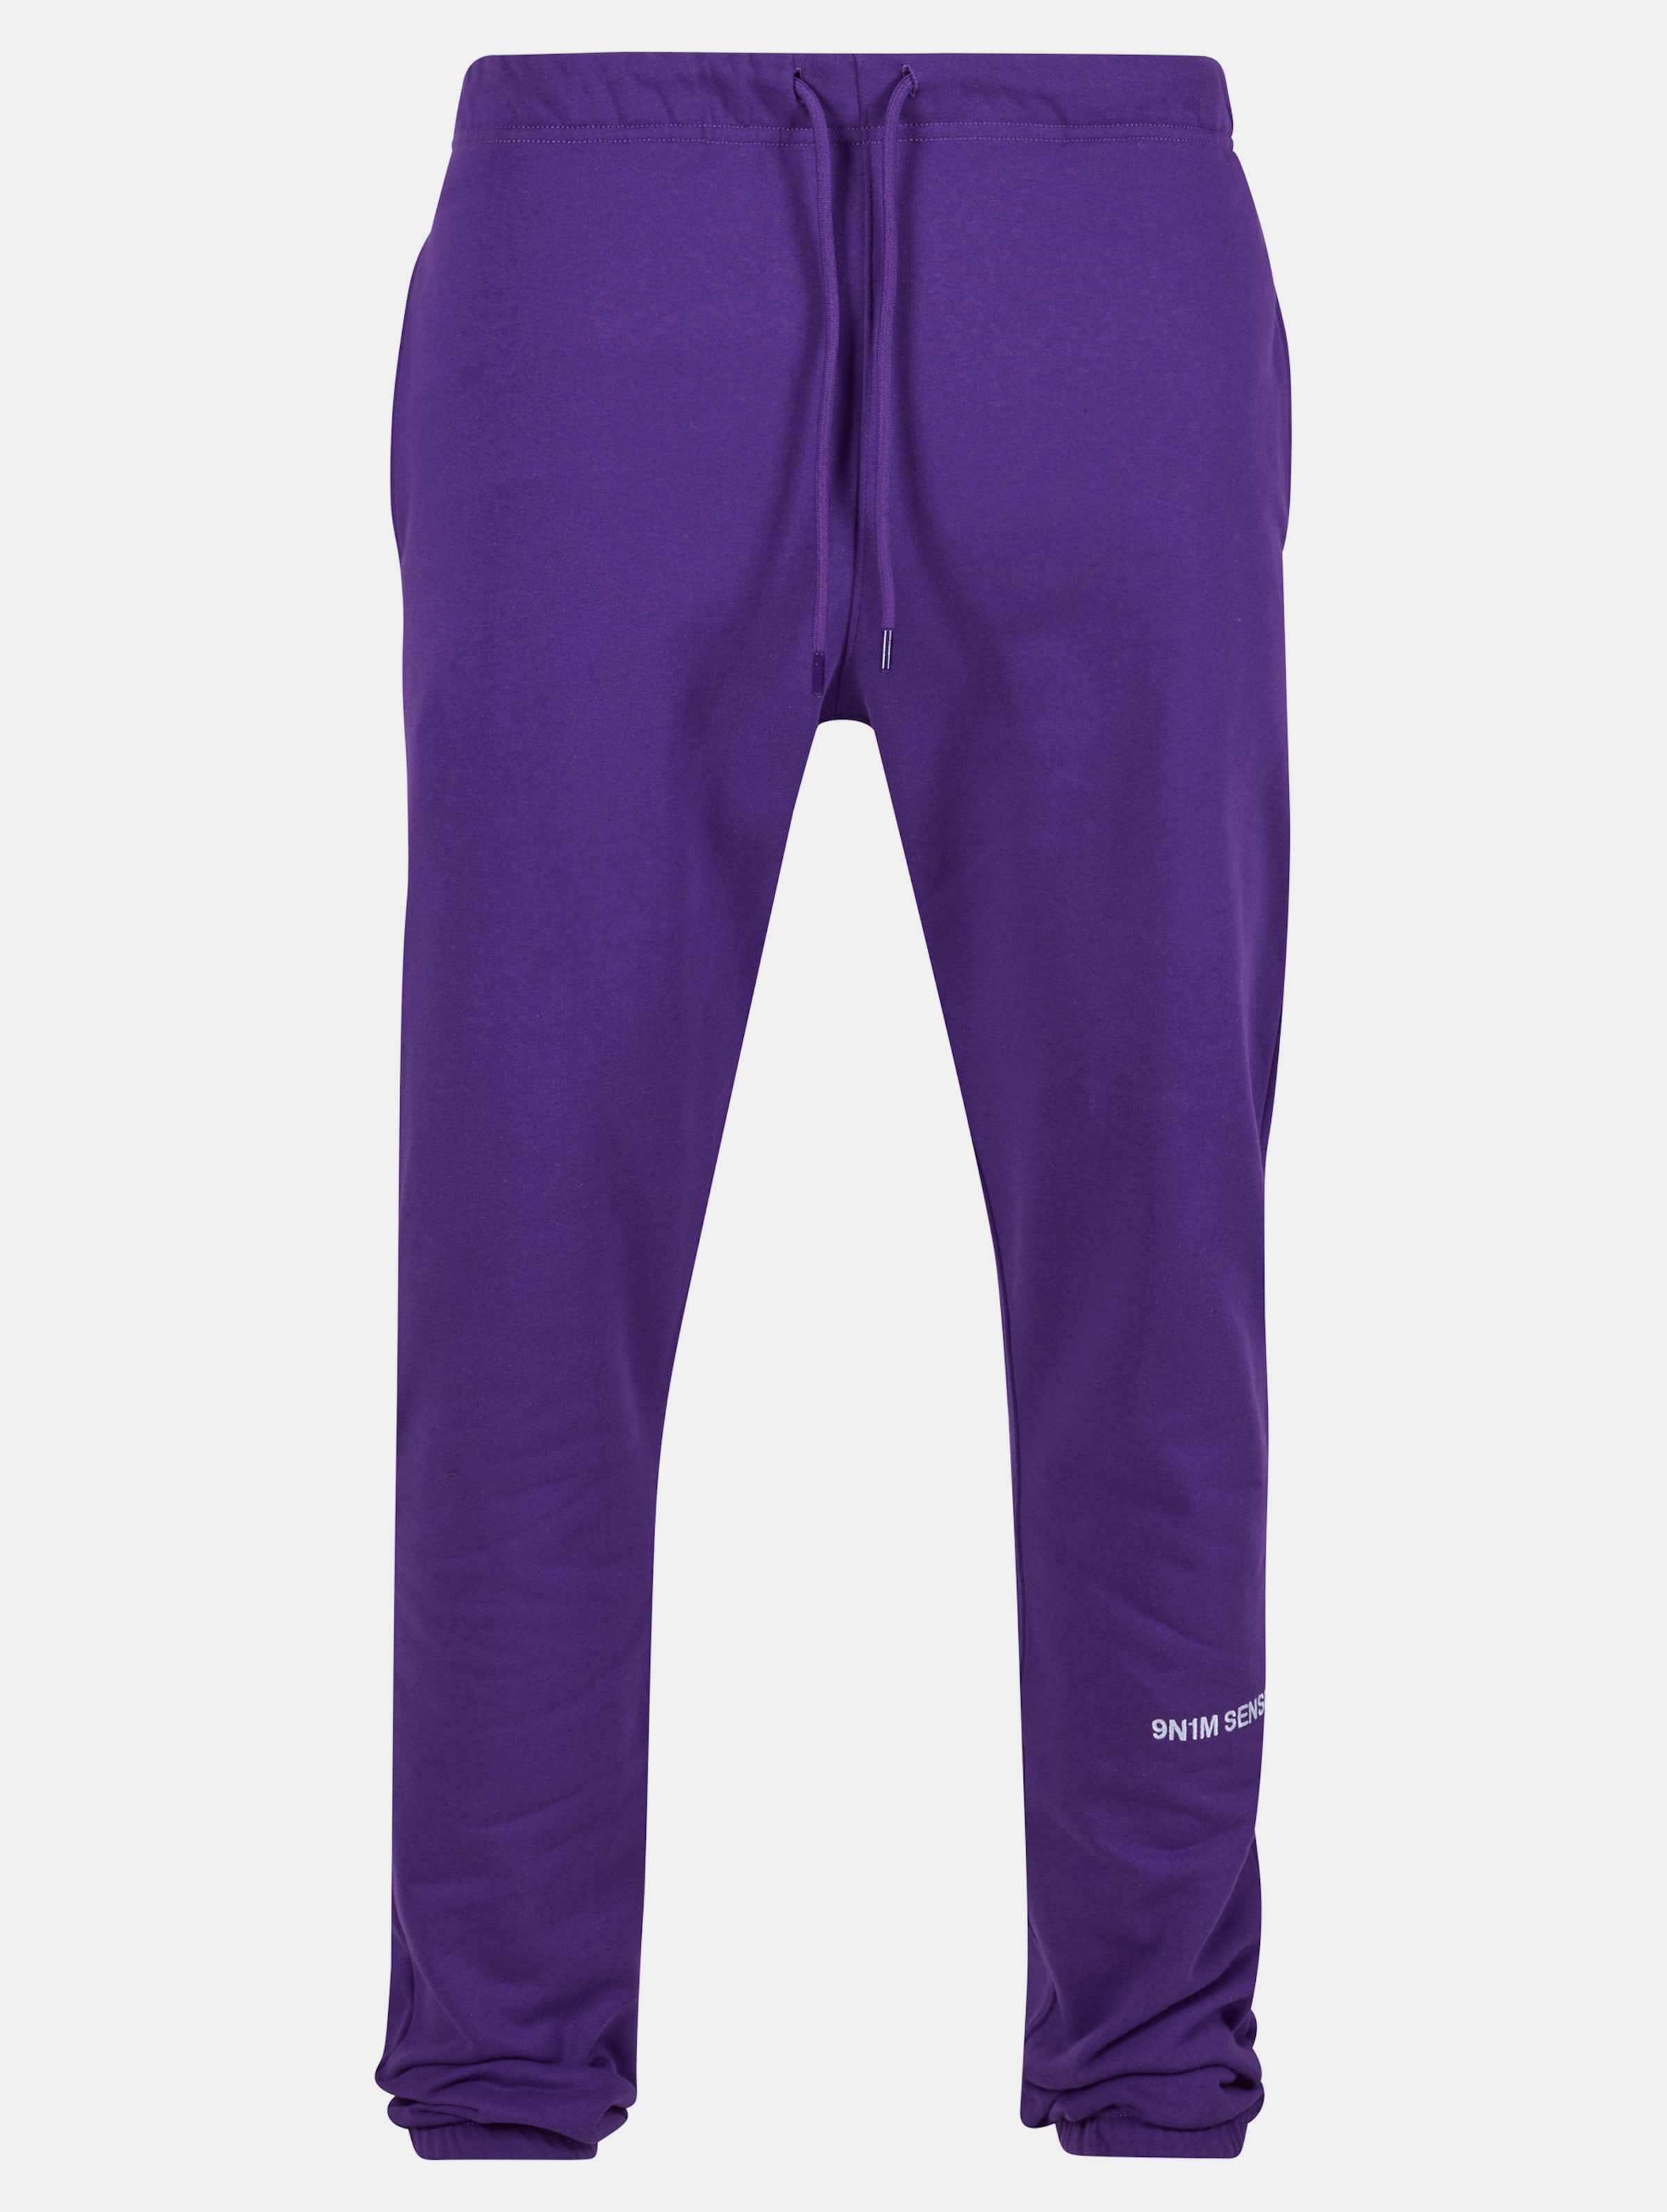 9N1M SENSE Essential Sweatpants Männer,Unisex op kleur violet, Maat S